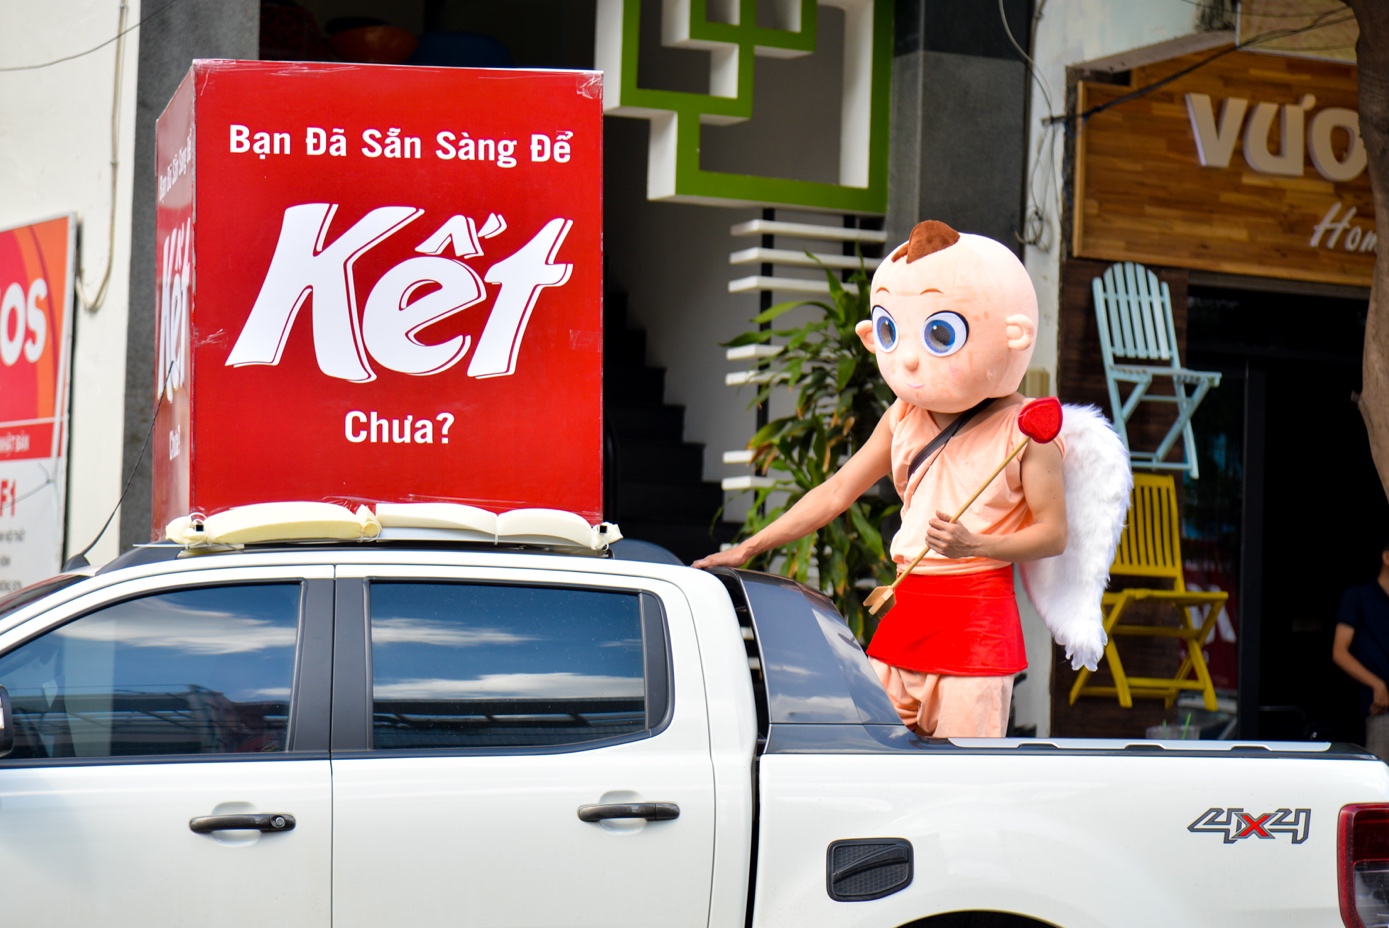 Người Sài Gòn thích thú với dàn thần tình yêu đi “xế siêu ngầu” vòng quanh thành phố - Ảnh 4.